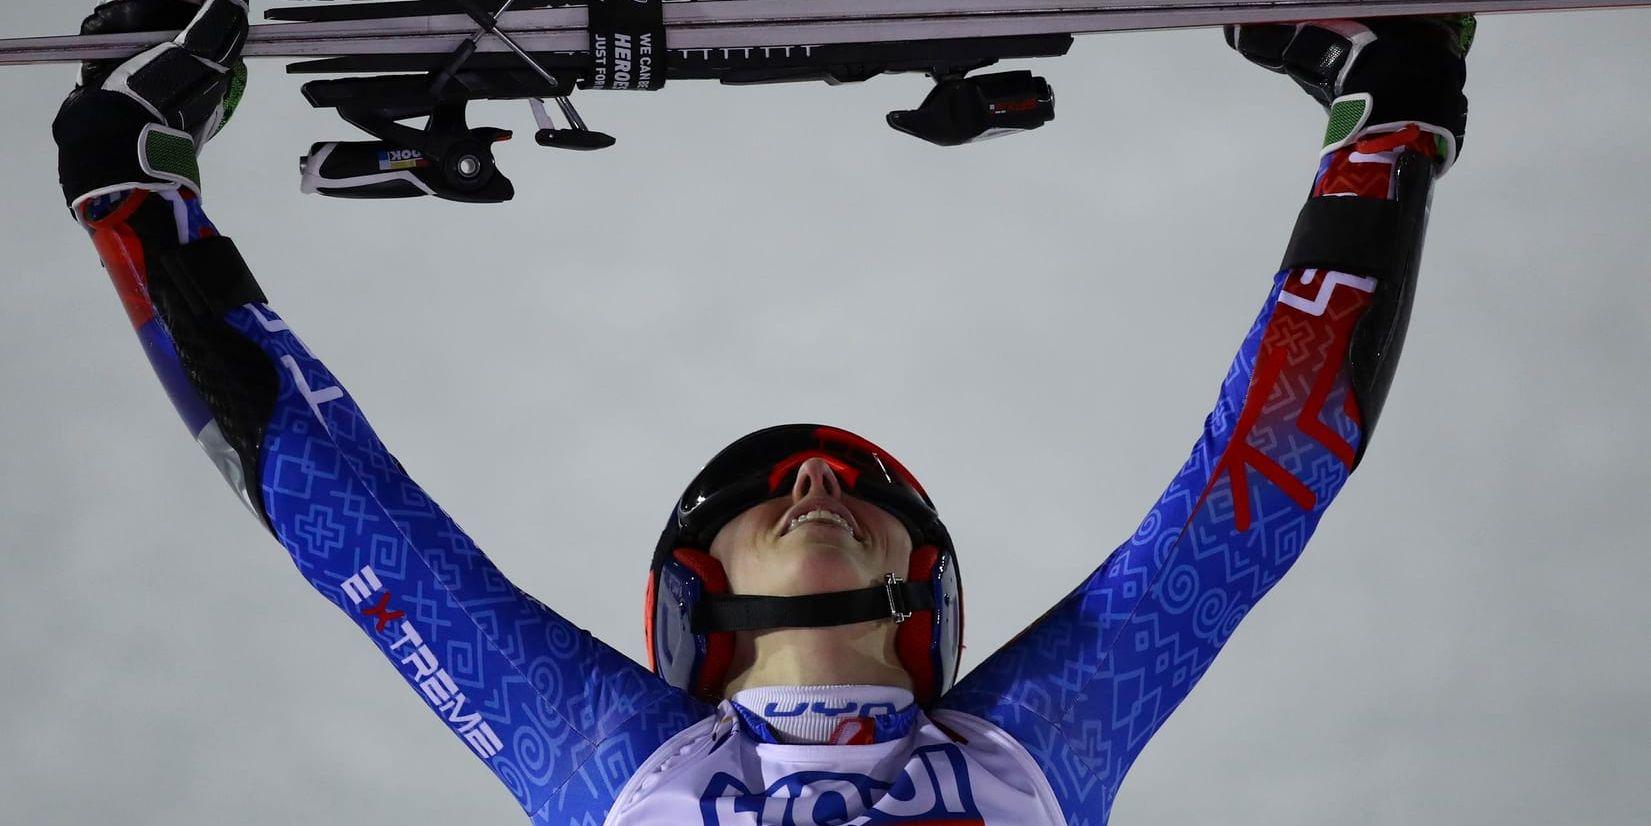 Petra Vlhova skriker ut sin glädje efter VM-guldet i storslalom.